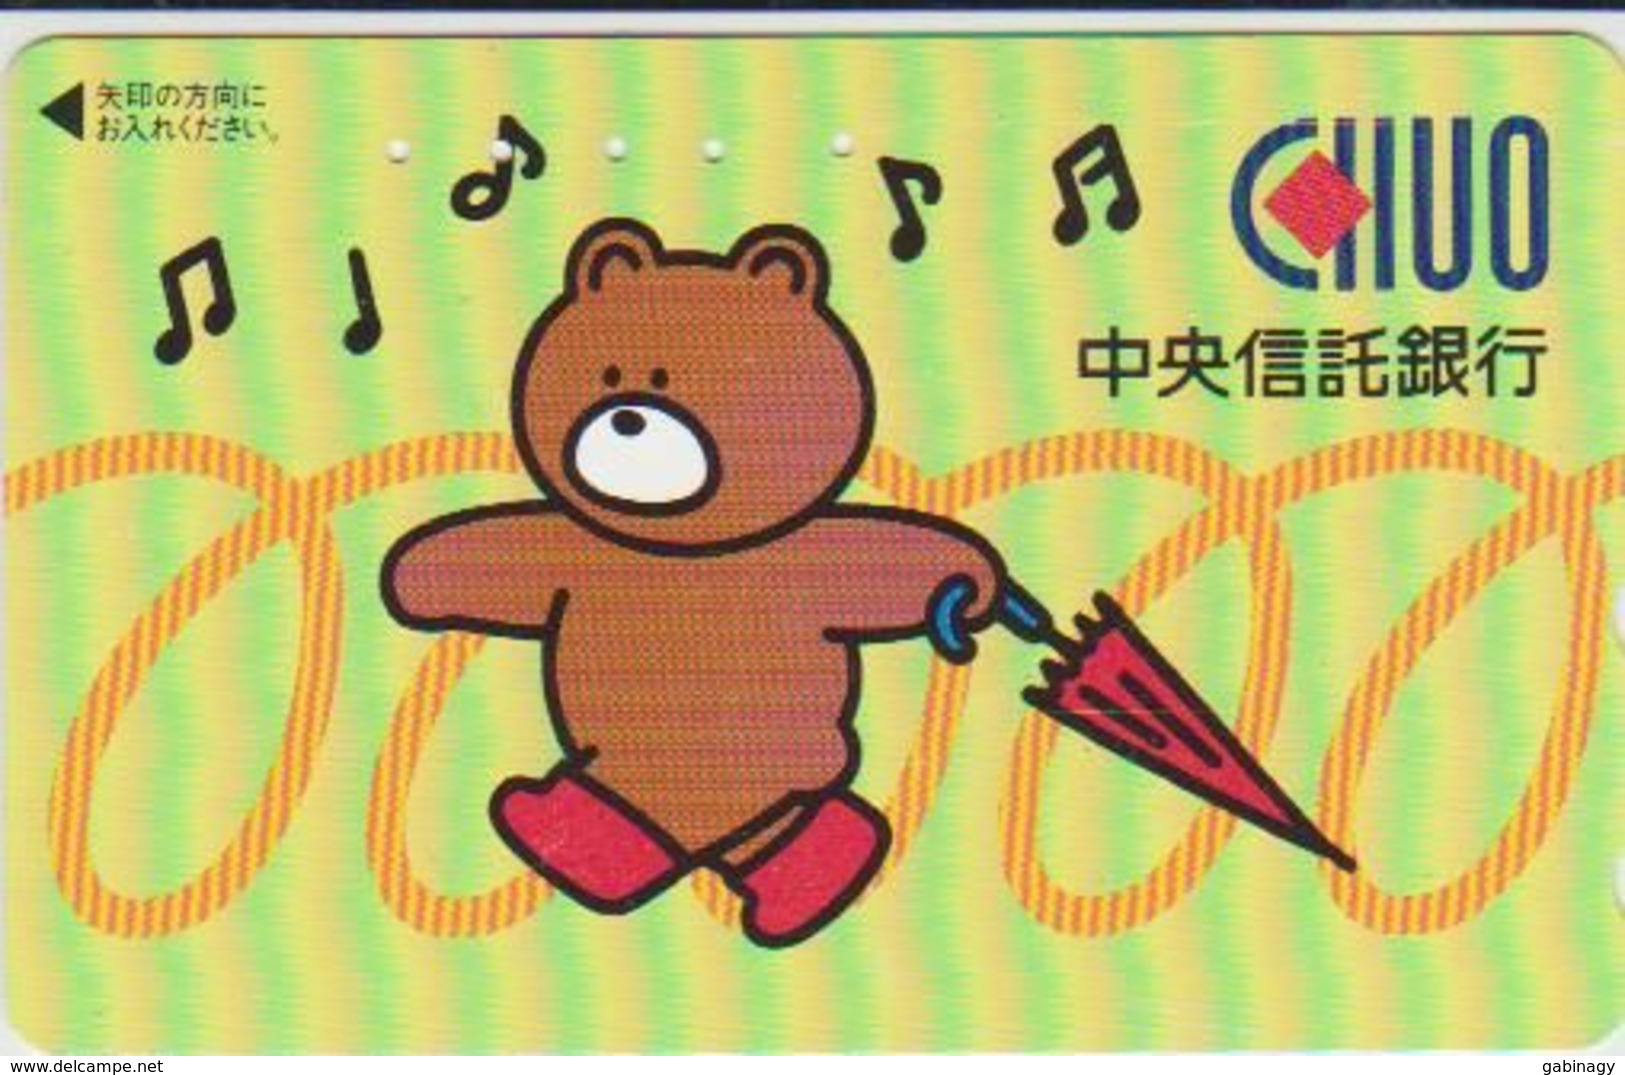 TEDDY BEAR - JAPAN 016 - CARTOON - 110-011 - Spiele